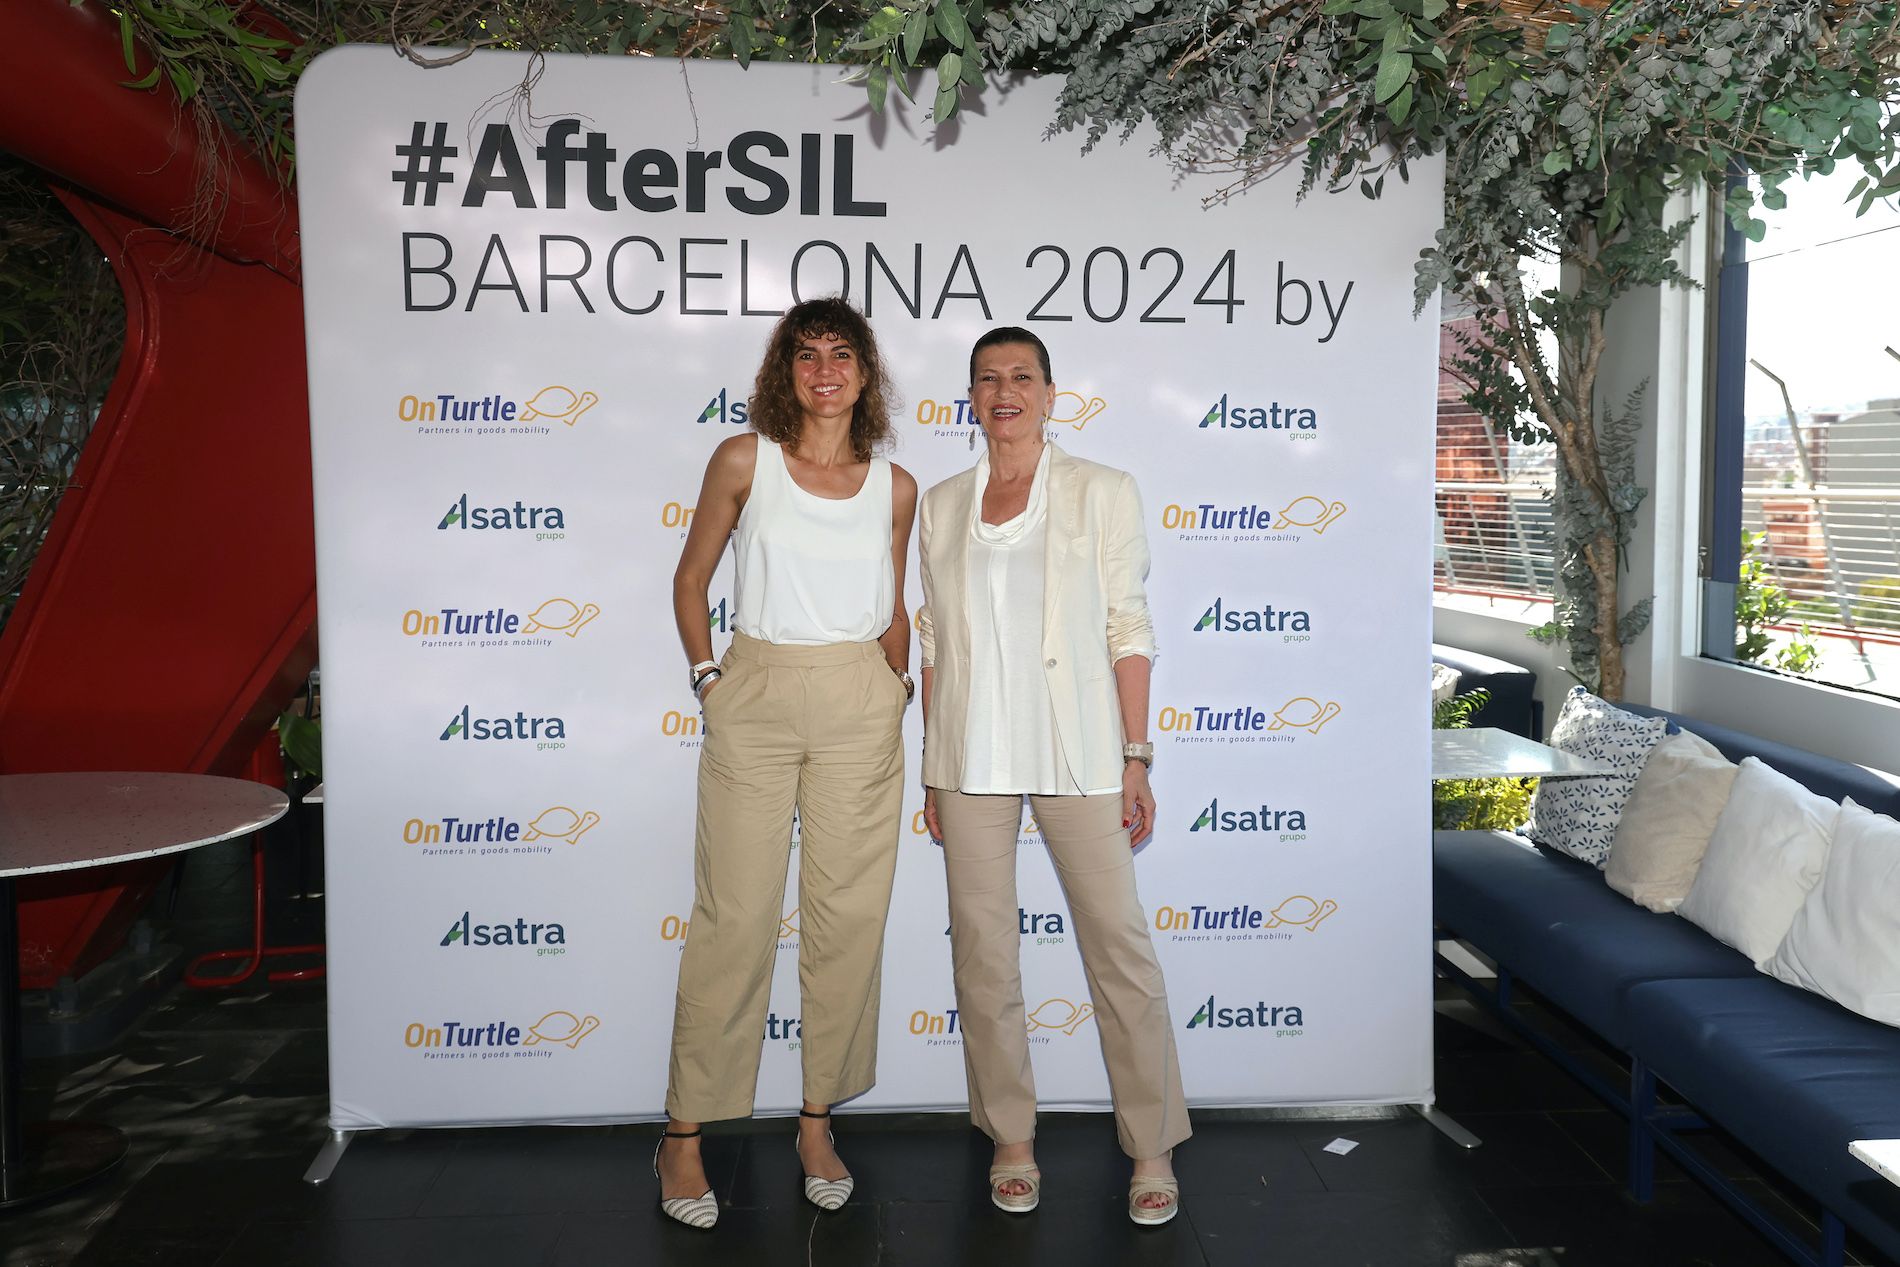 La alianza entre las dos empresas se ha anunciado en Barcelona.